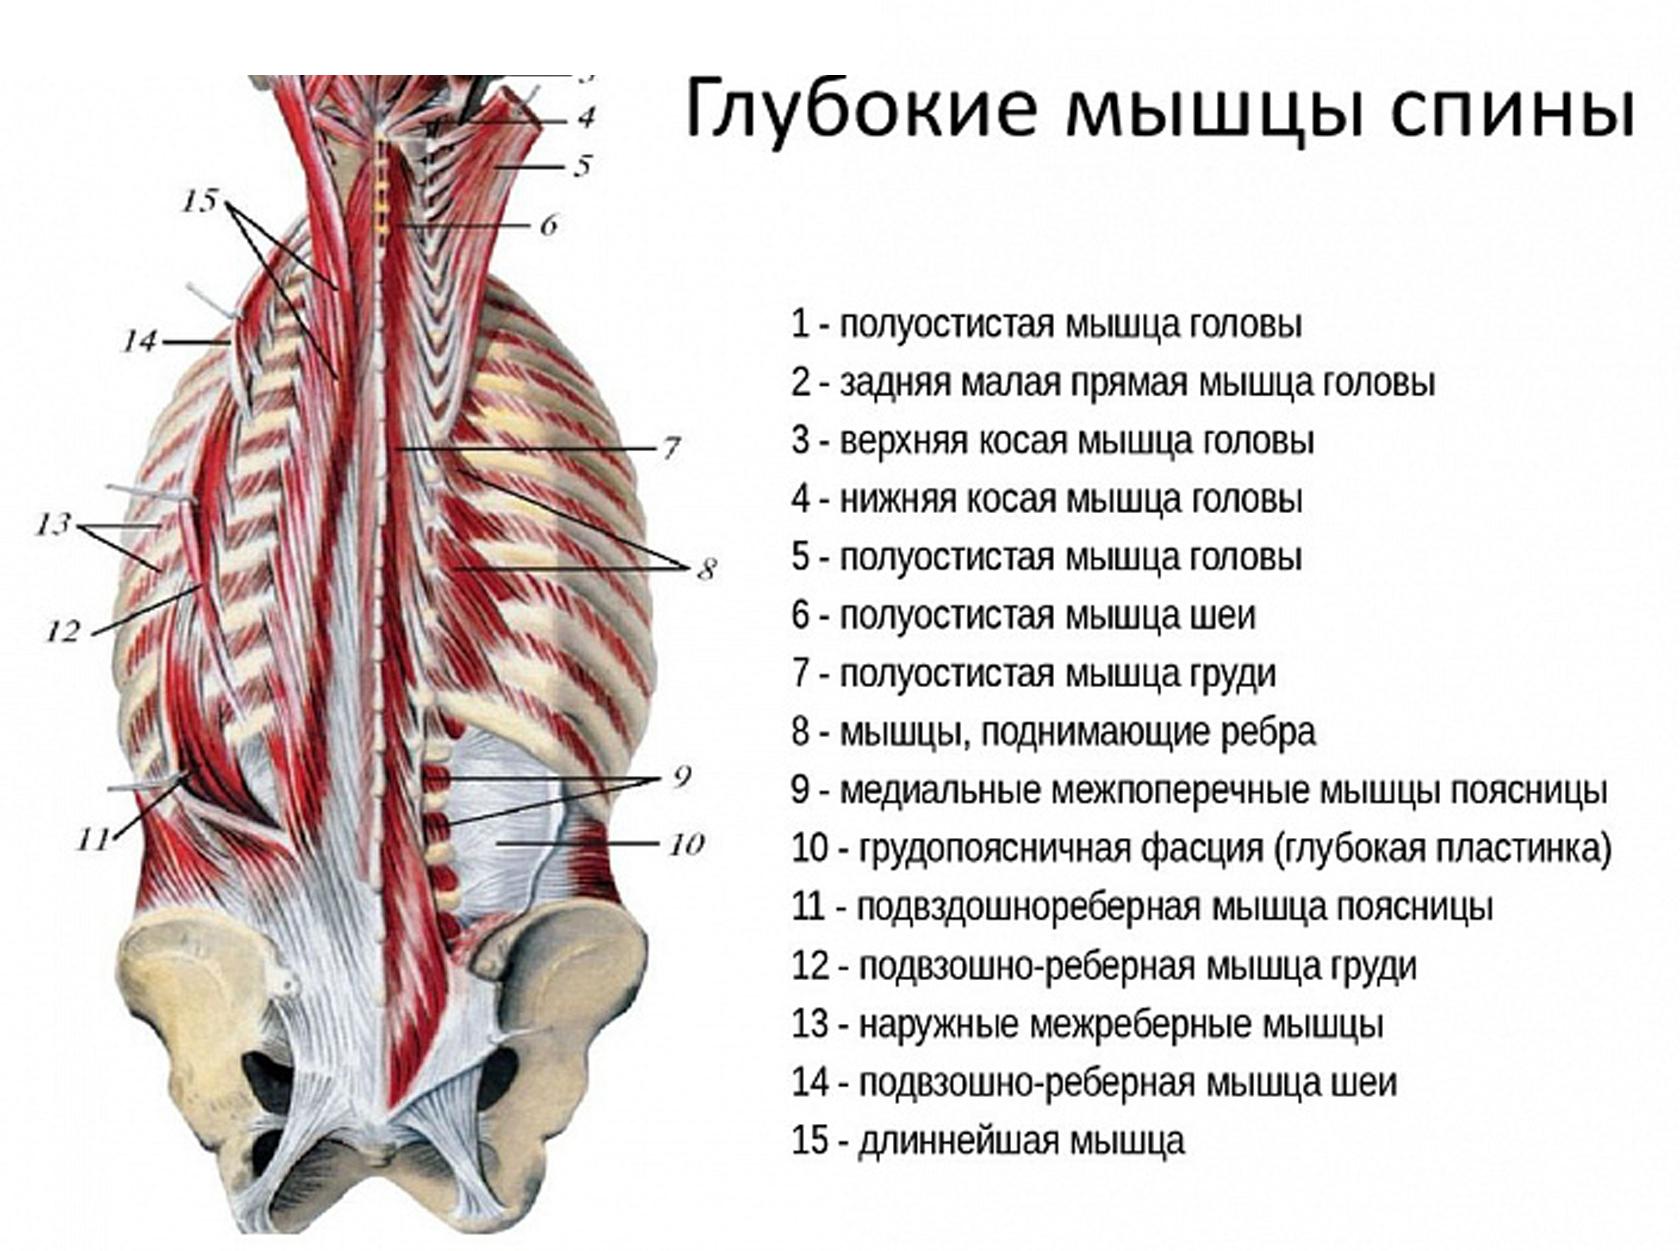 Ανατομία του θώρακα, της σπονδυλικής στήλης, των μυών της πλάτης, της ωμικής ζώνης